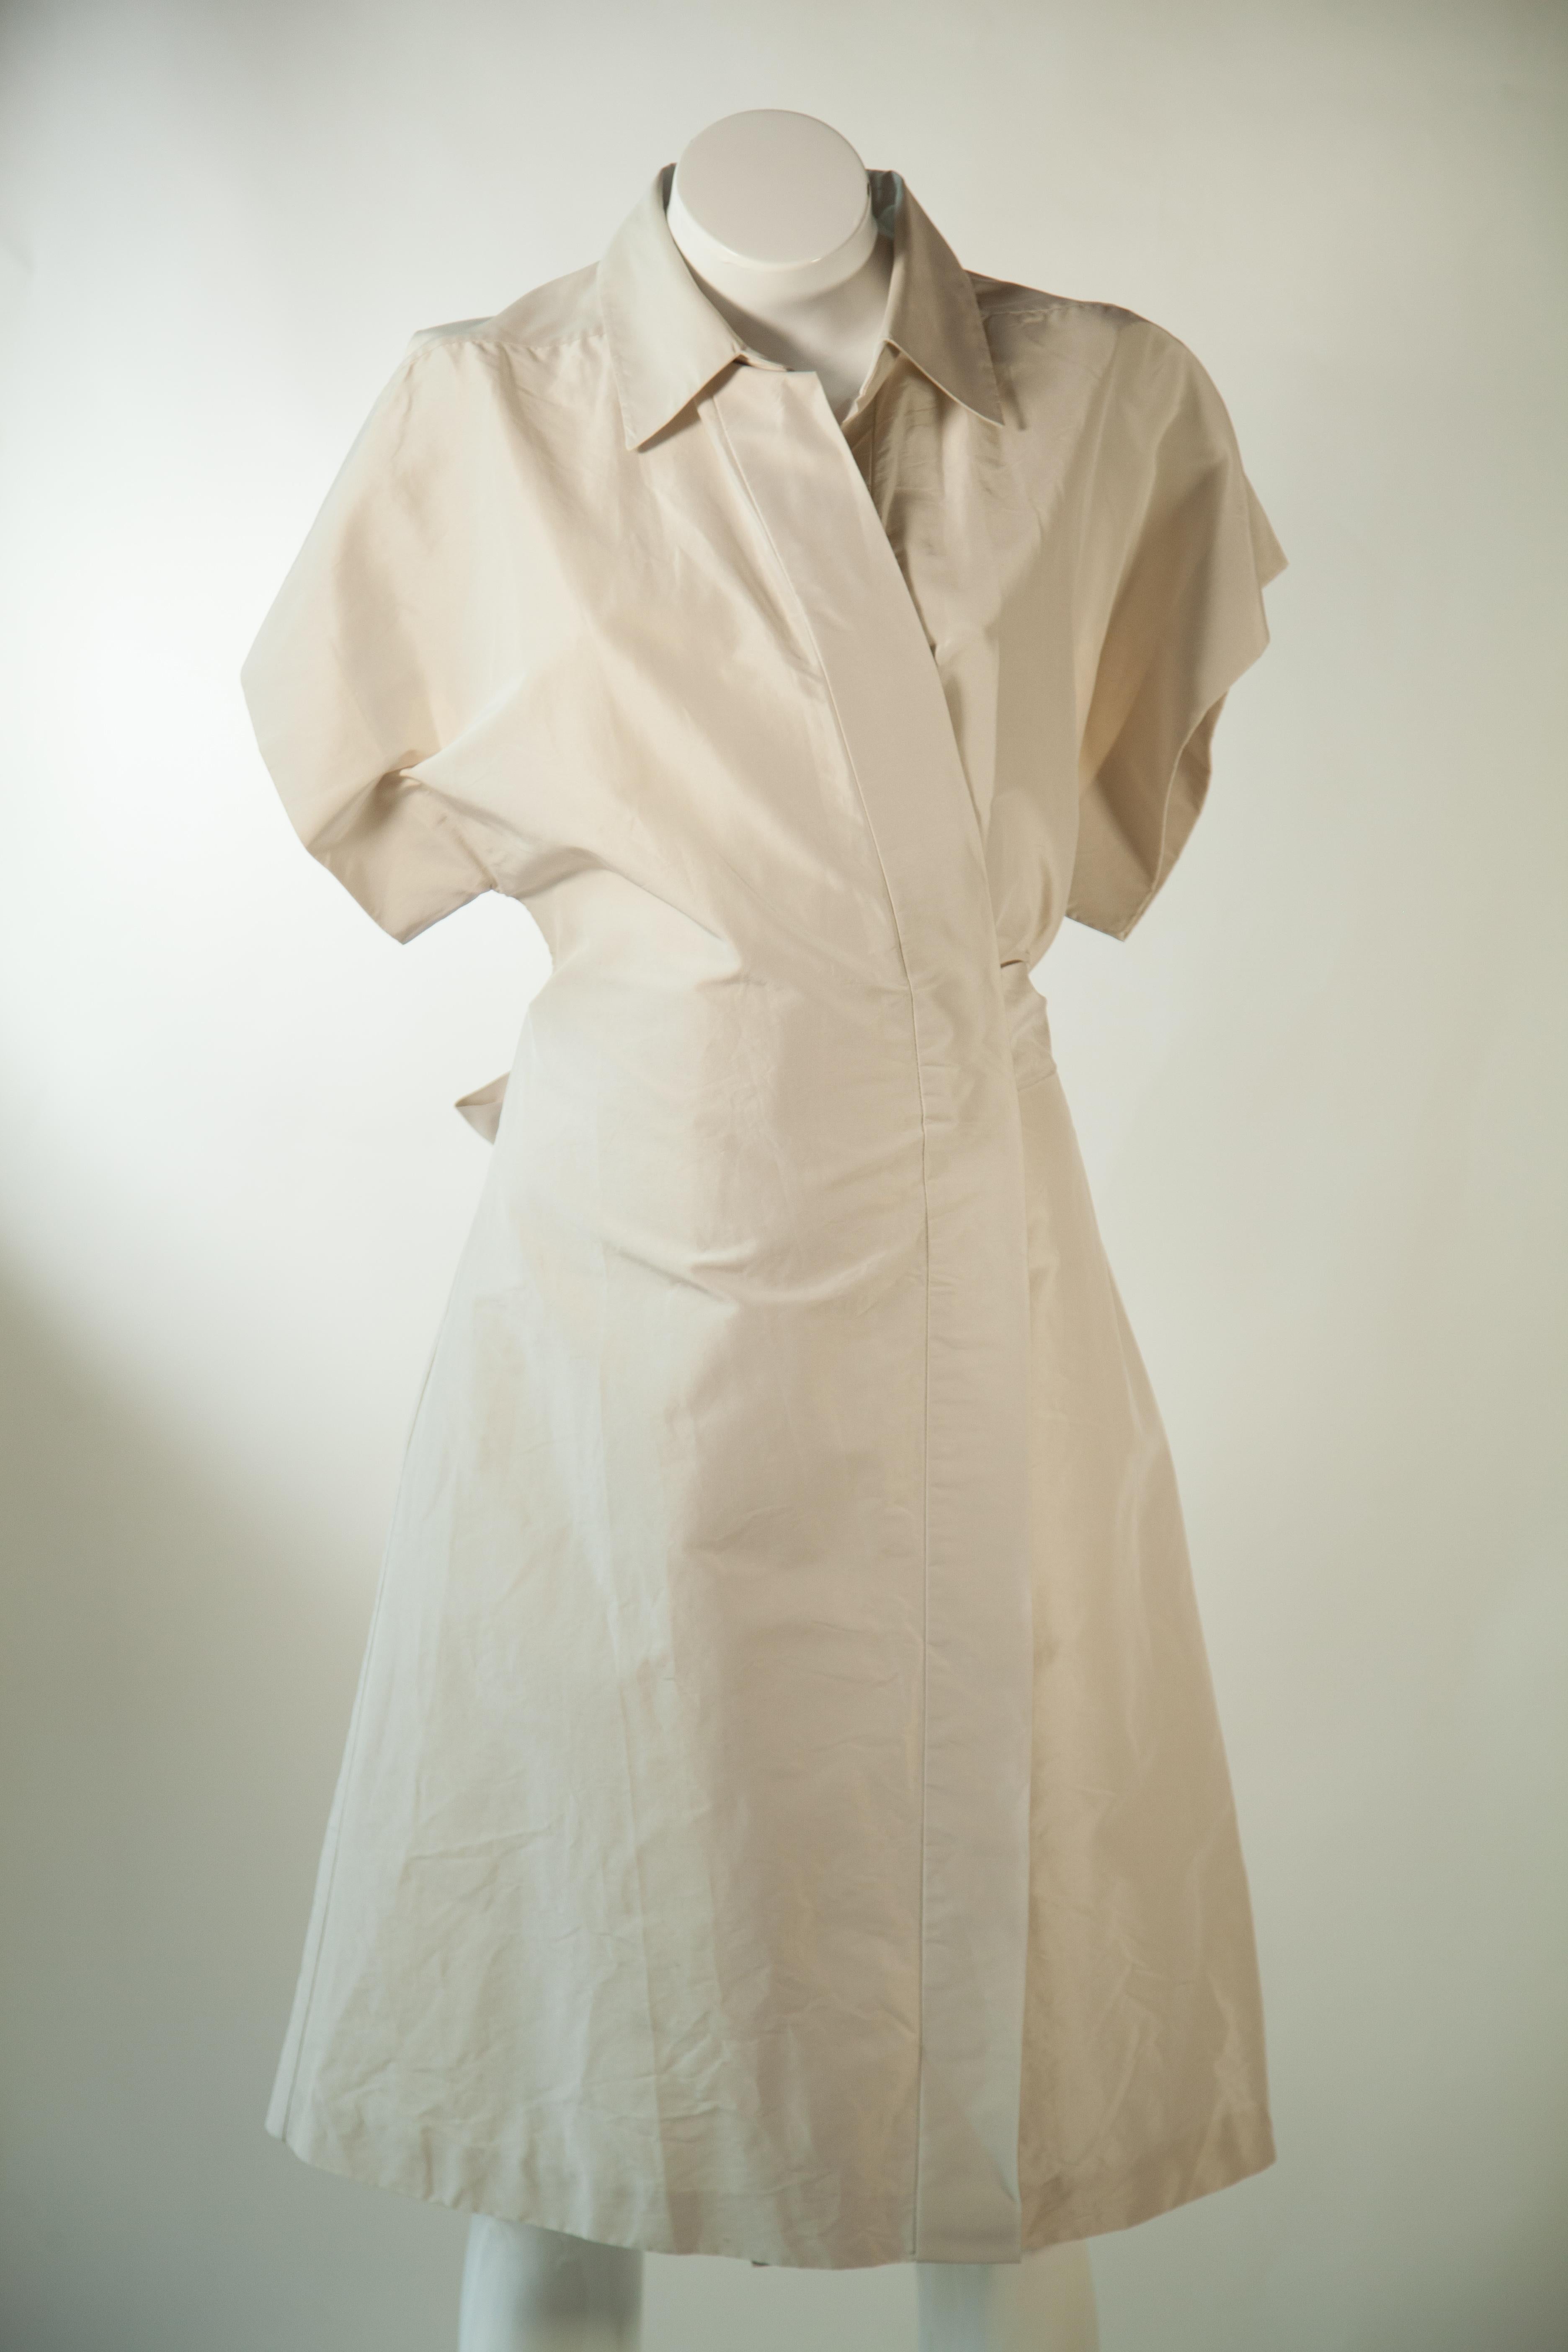 La robe Yves Saint Laurent Rive Gauche White est une robe portefeuille blanche à manches courtes. Fabriquée avec des tissus de qualité signature, cette pièce élégante et intemporelle vous assurera un look chic et confortable. Un choix idéal pour